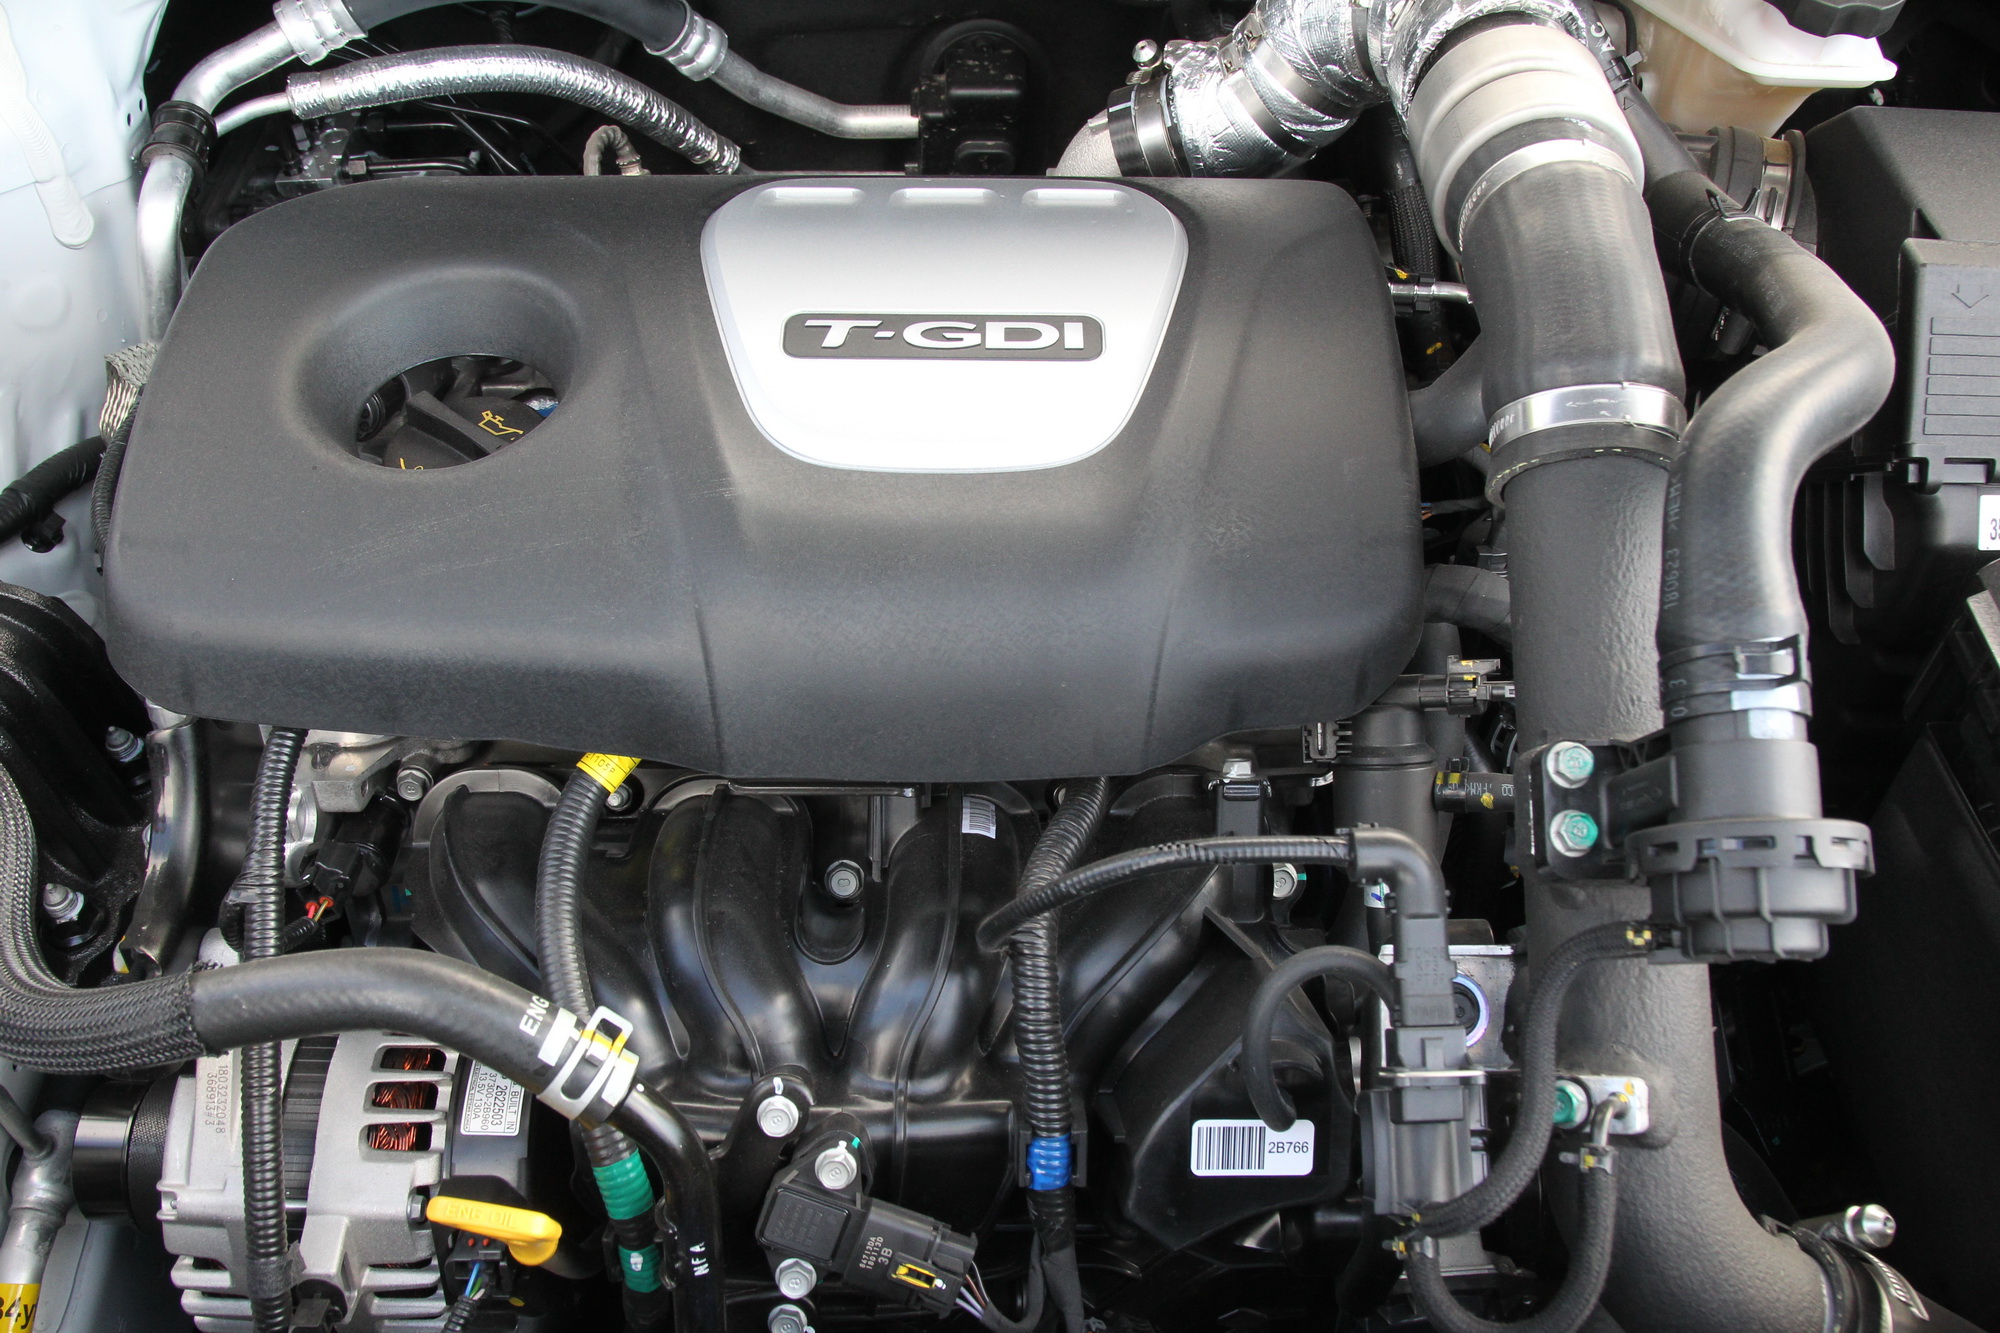 Test drive: Kia Sportage 1.6 T-GDi 2WD